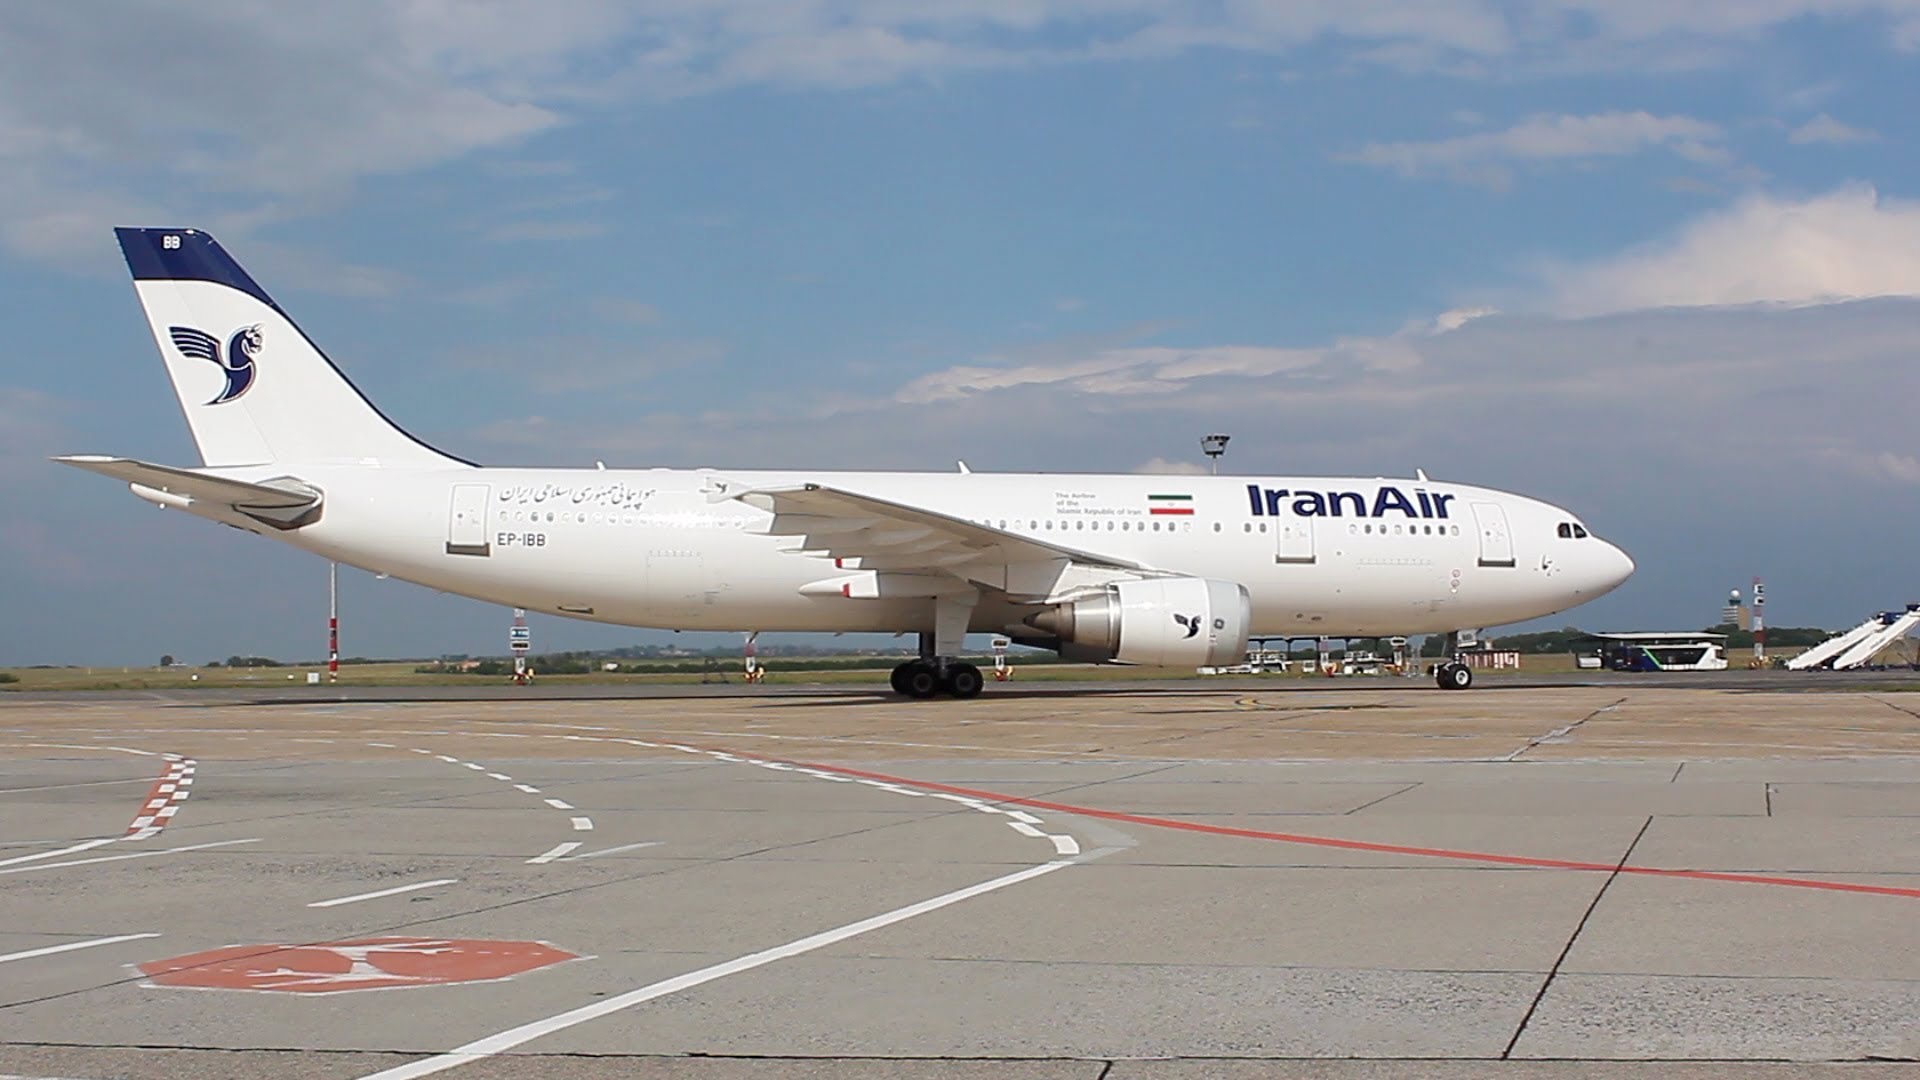 تفاهمنامه ایران و روسیه برای تامین قطعه هواپیما امضا شد